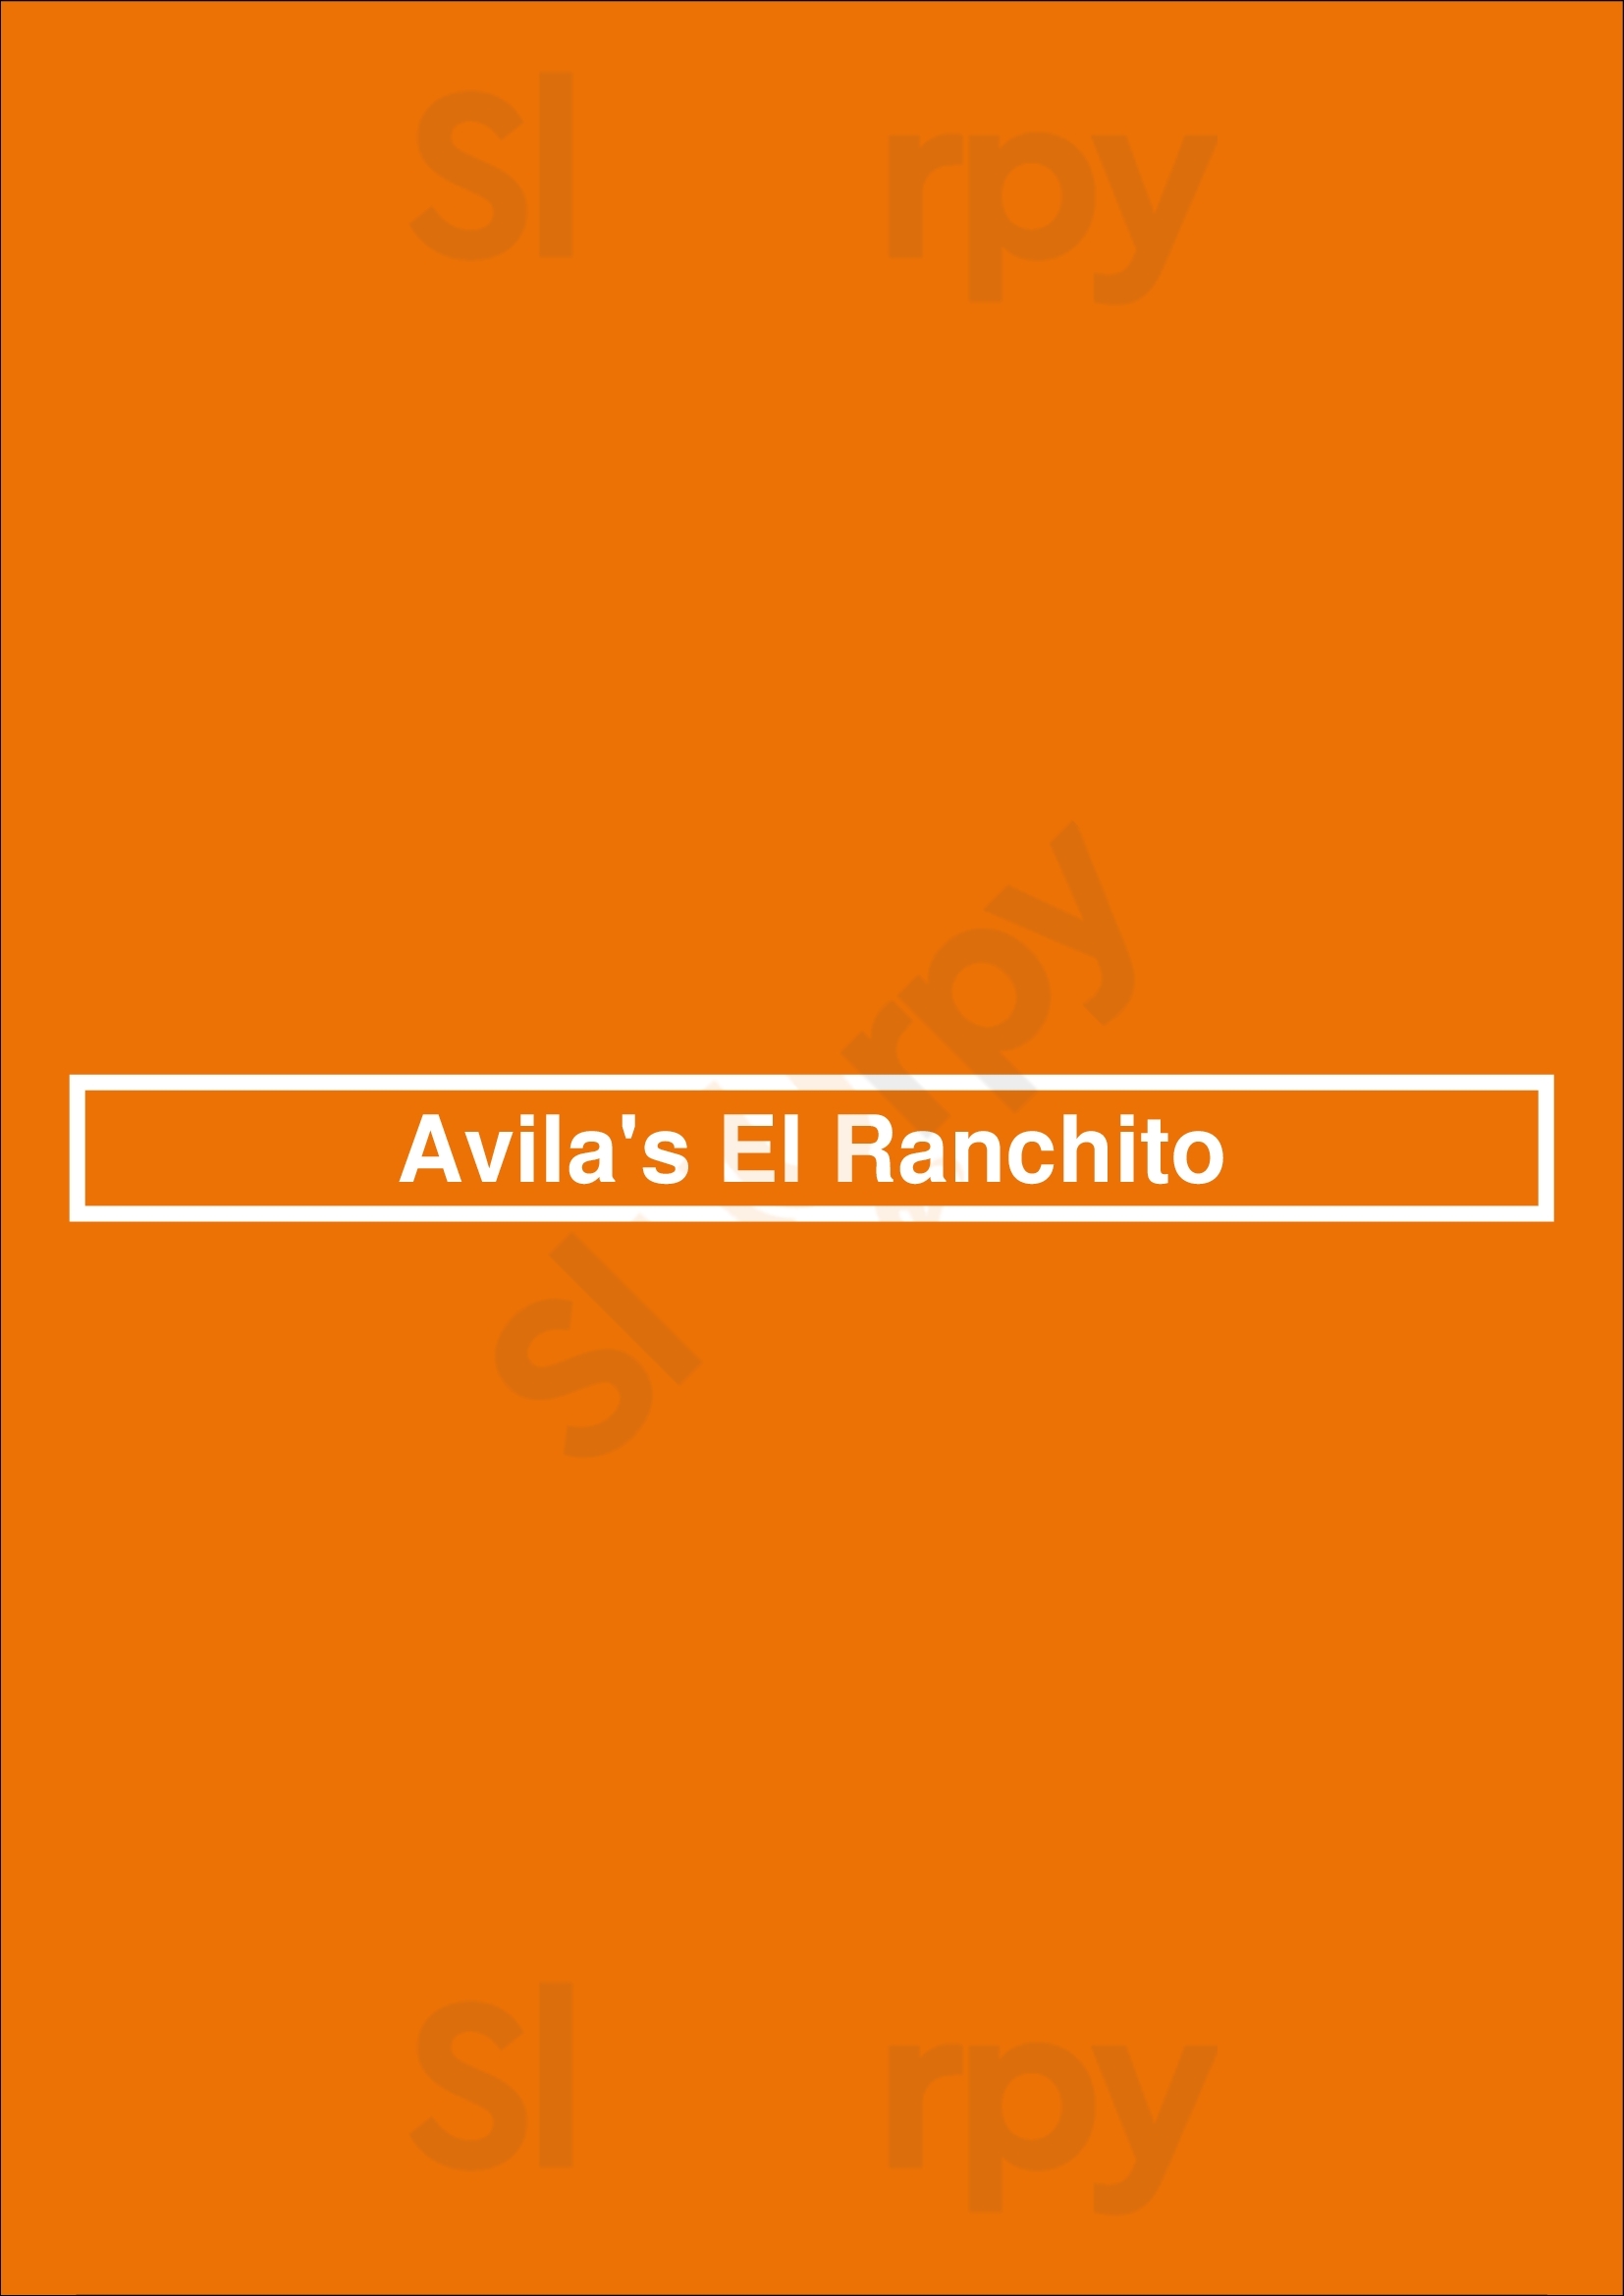 Avila's El Ranchito Newport Beach Menu - 1